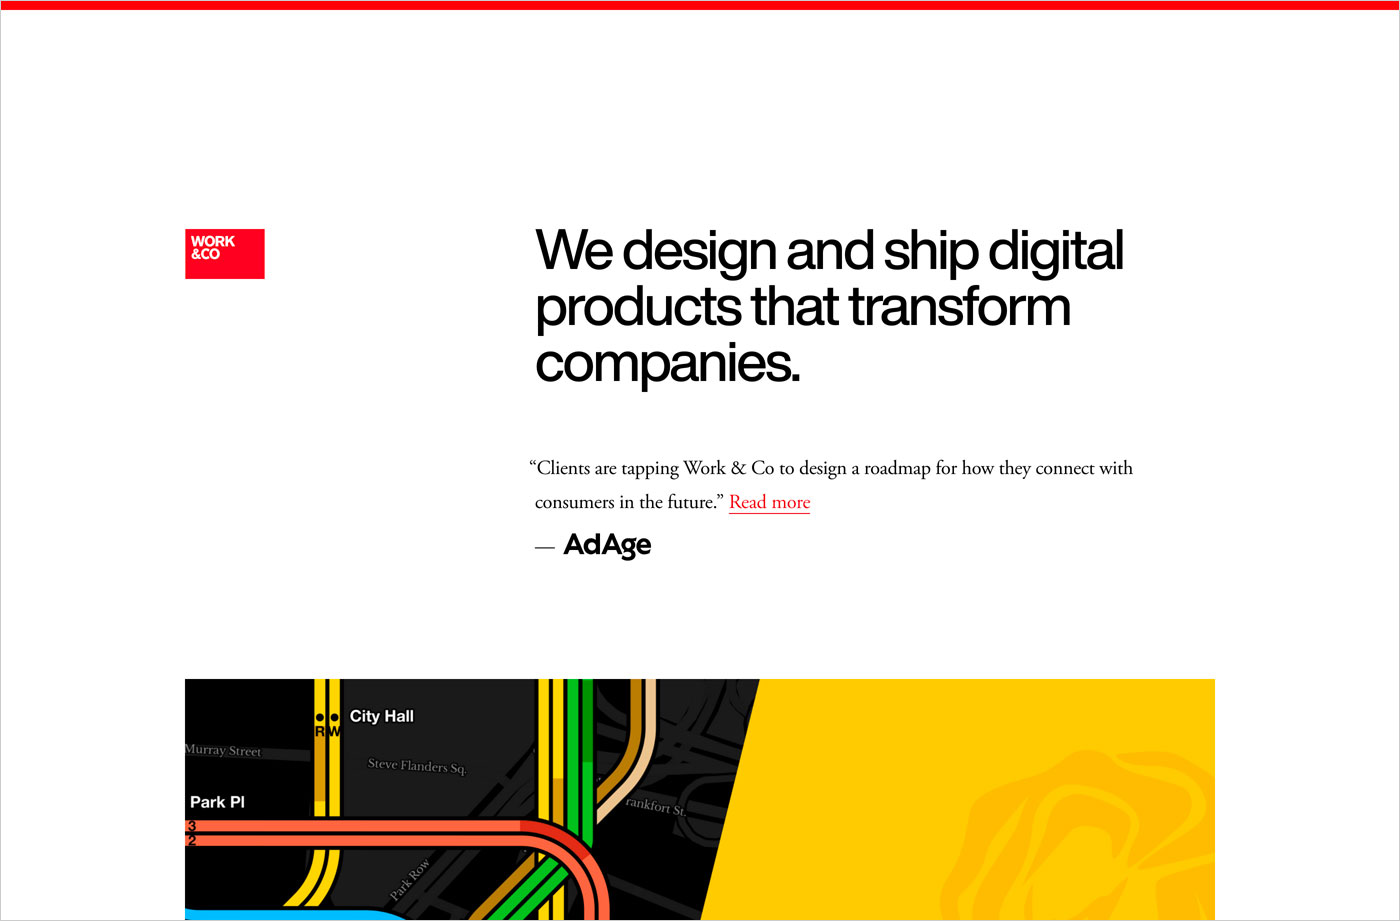 Work & Co | Digital Product Agencyウェブサイトの画面キャプチャ画像